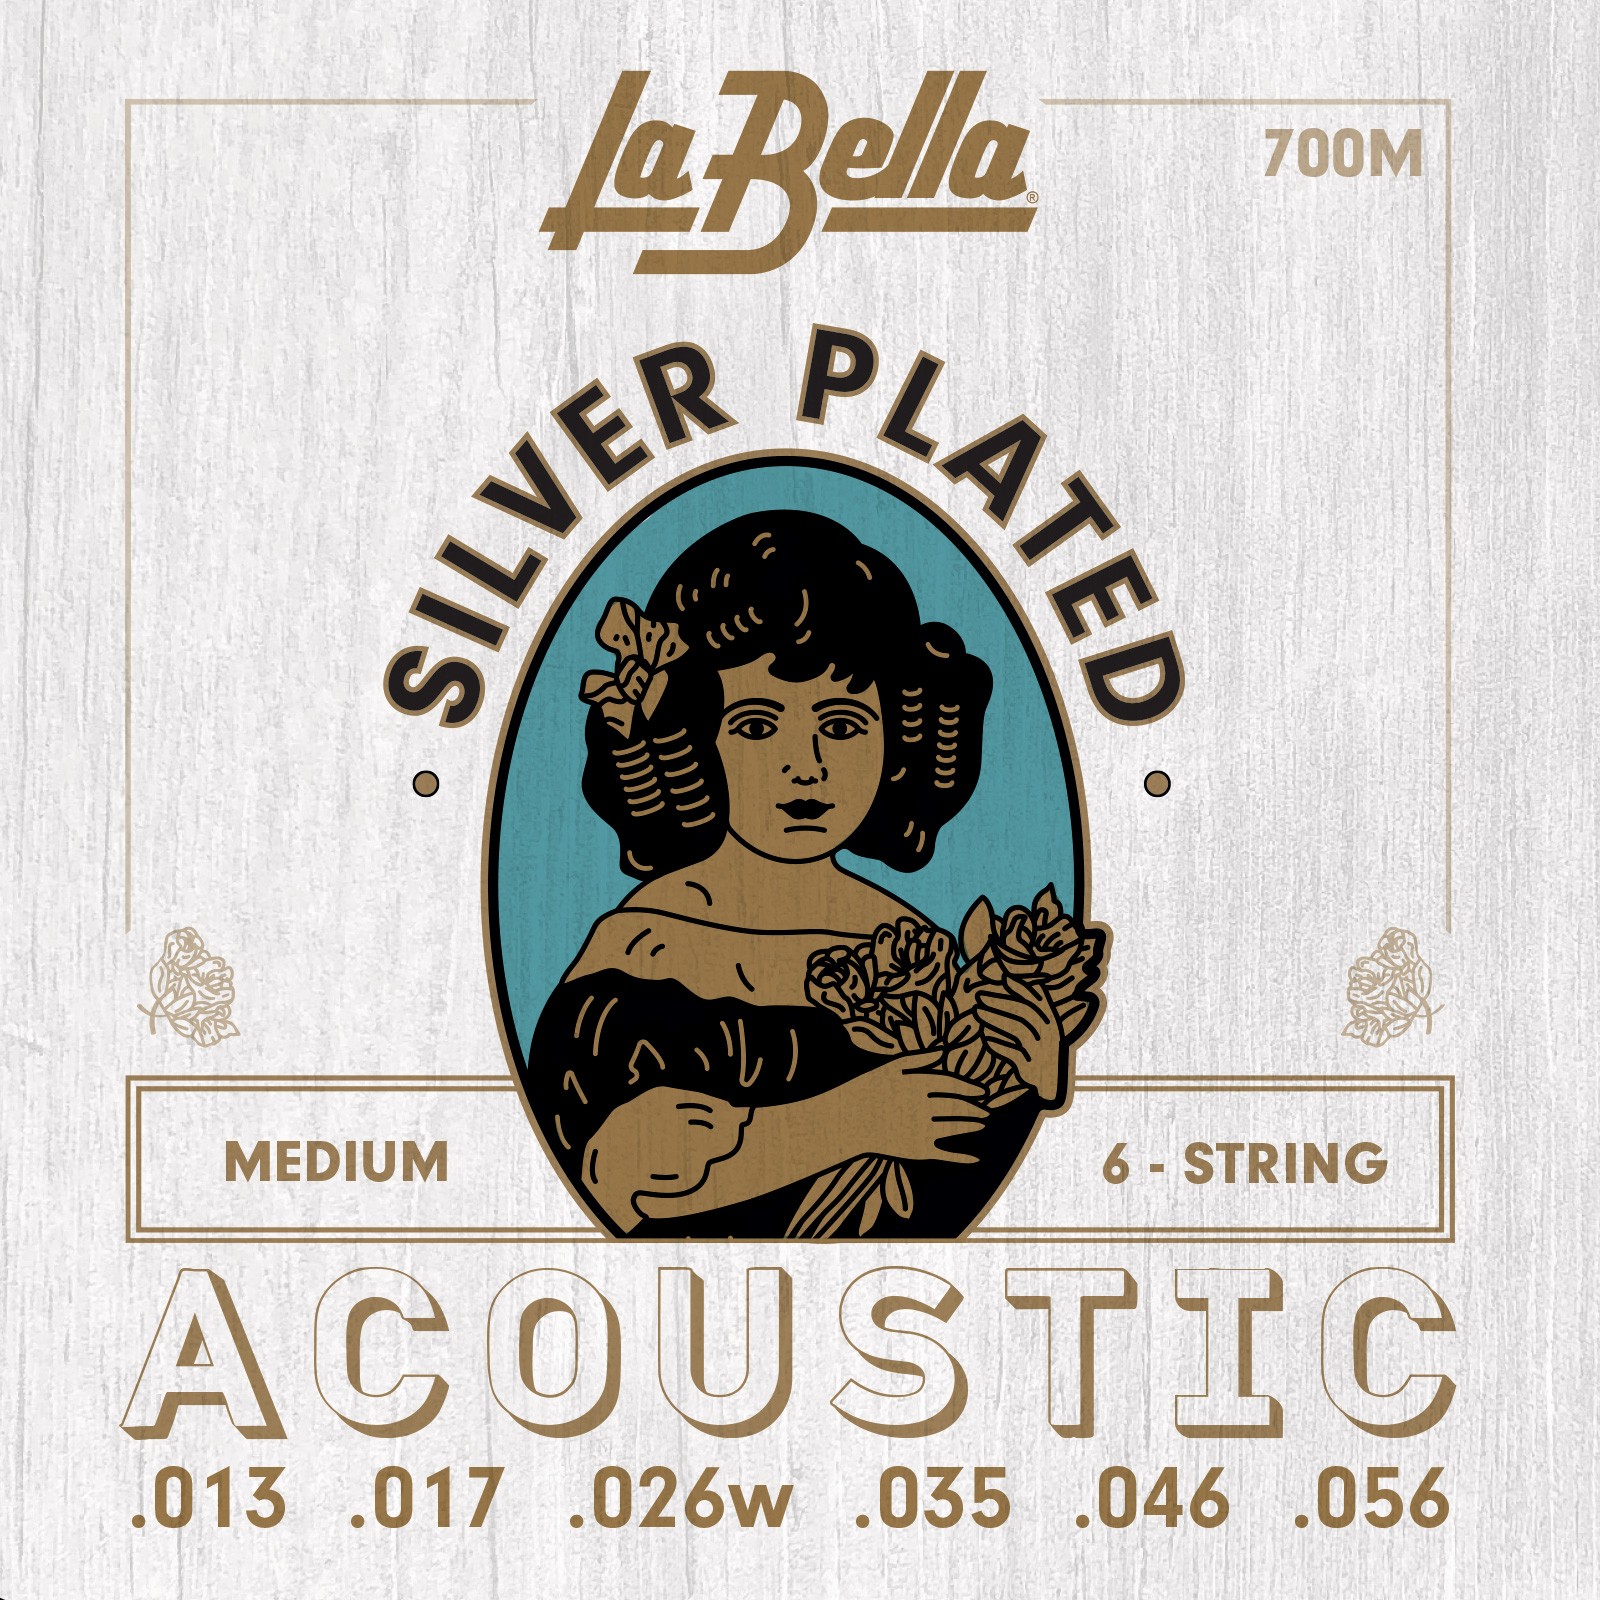 LA BELLA La Bella Silver Plated | Muta di corde per chitarra acustica 700M Scalatura: 013-017-026w-035-046-056